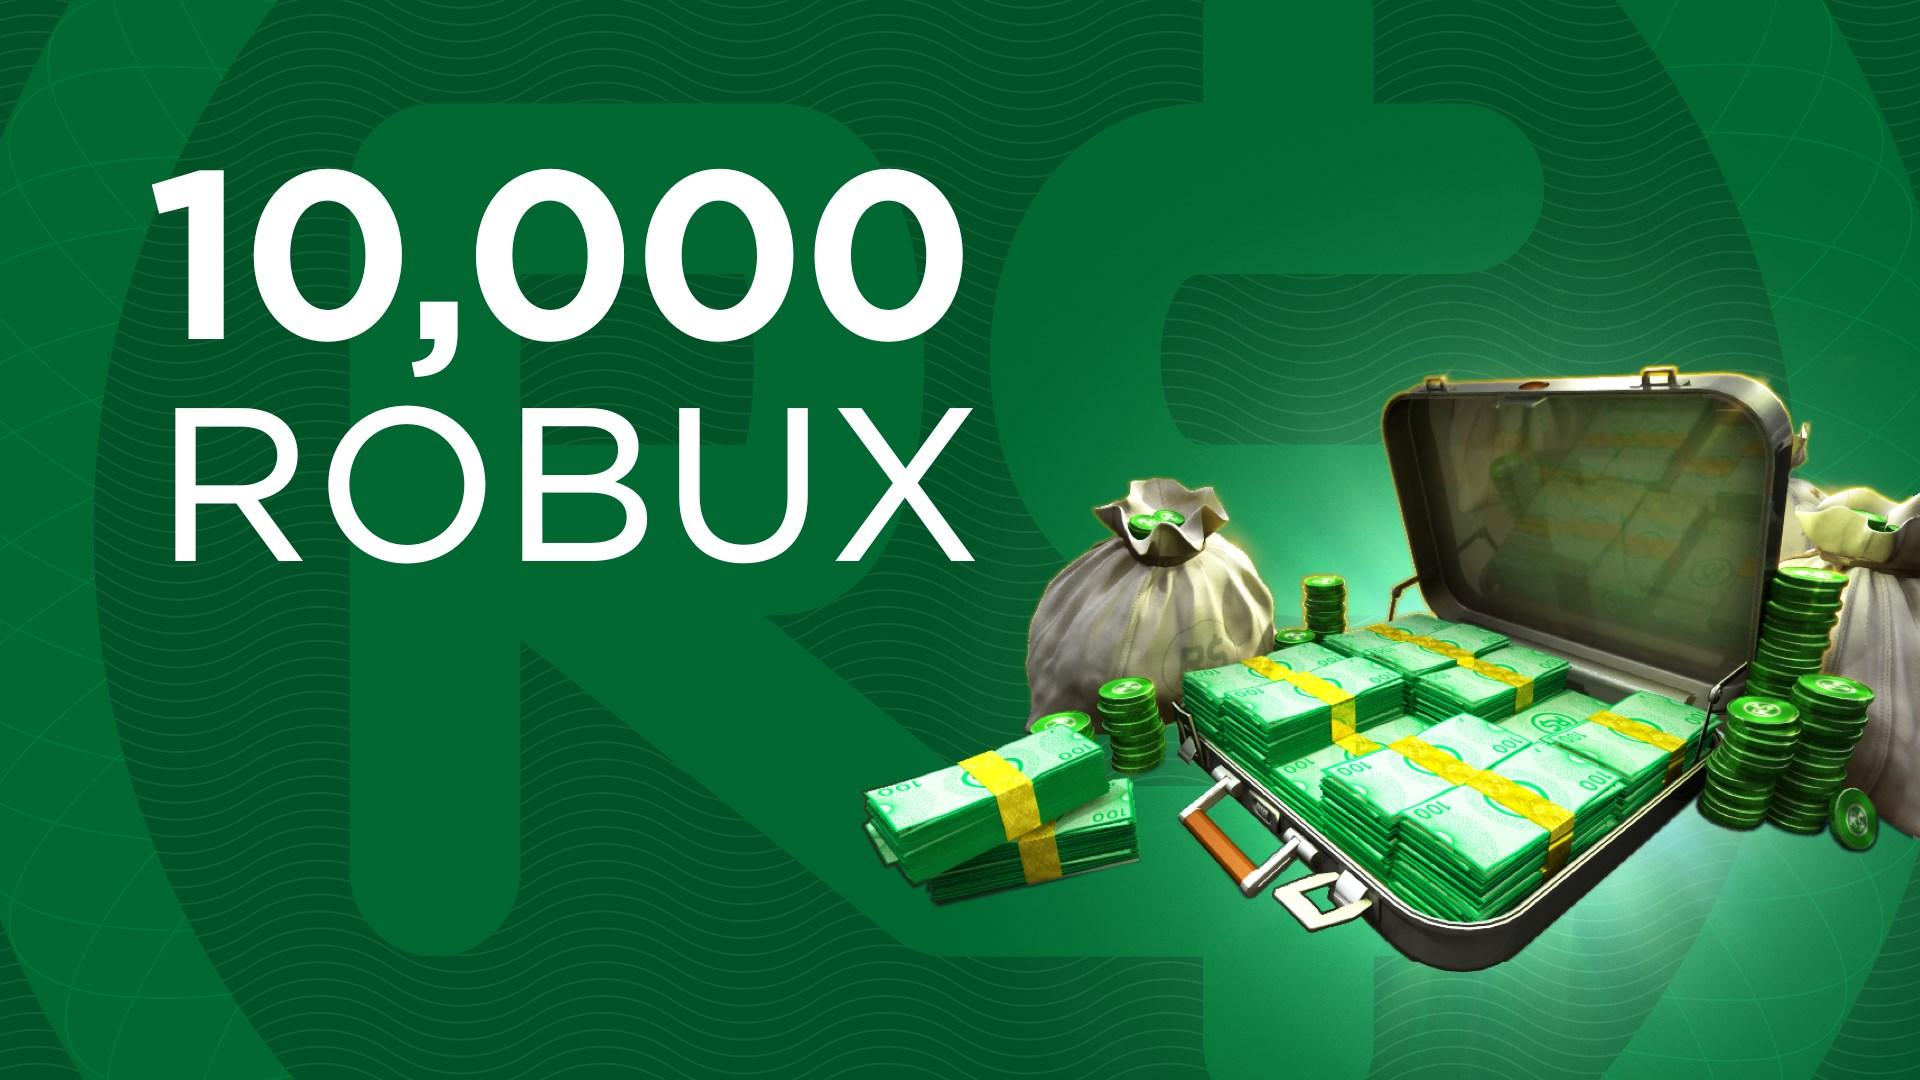 Convide amigos e ganhe até 10000 Robux!